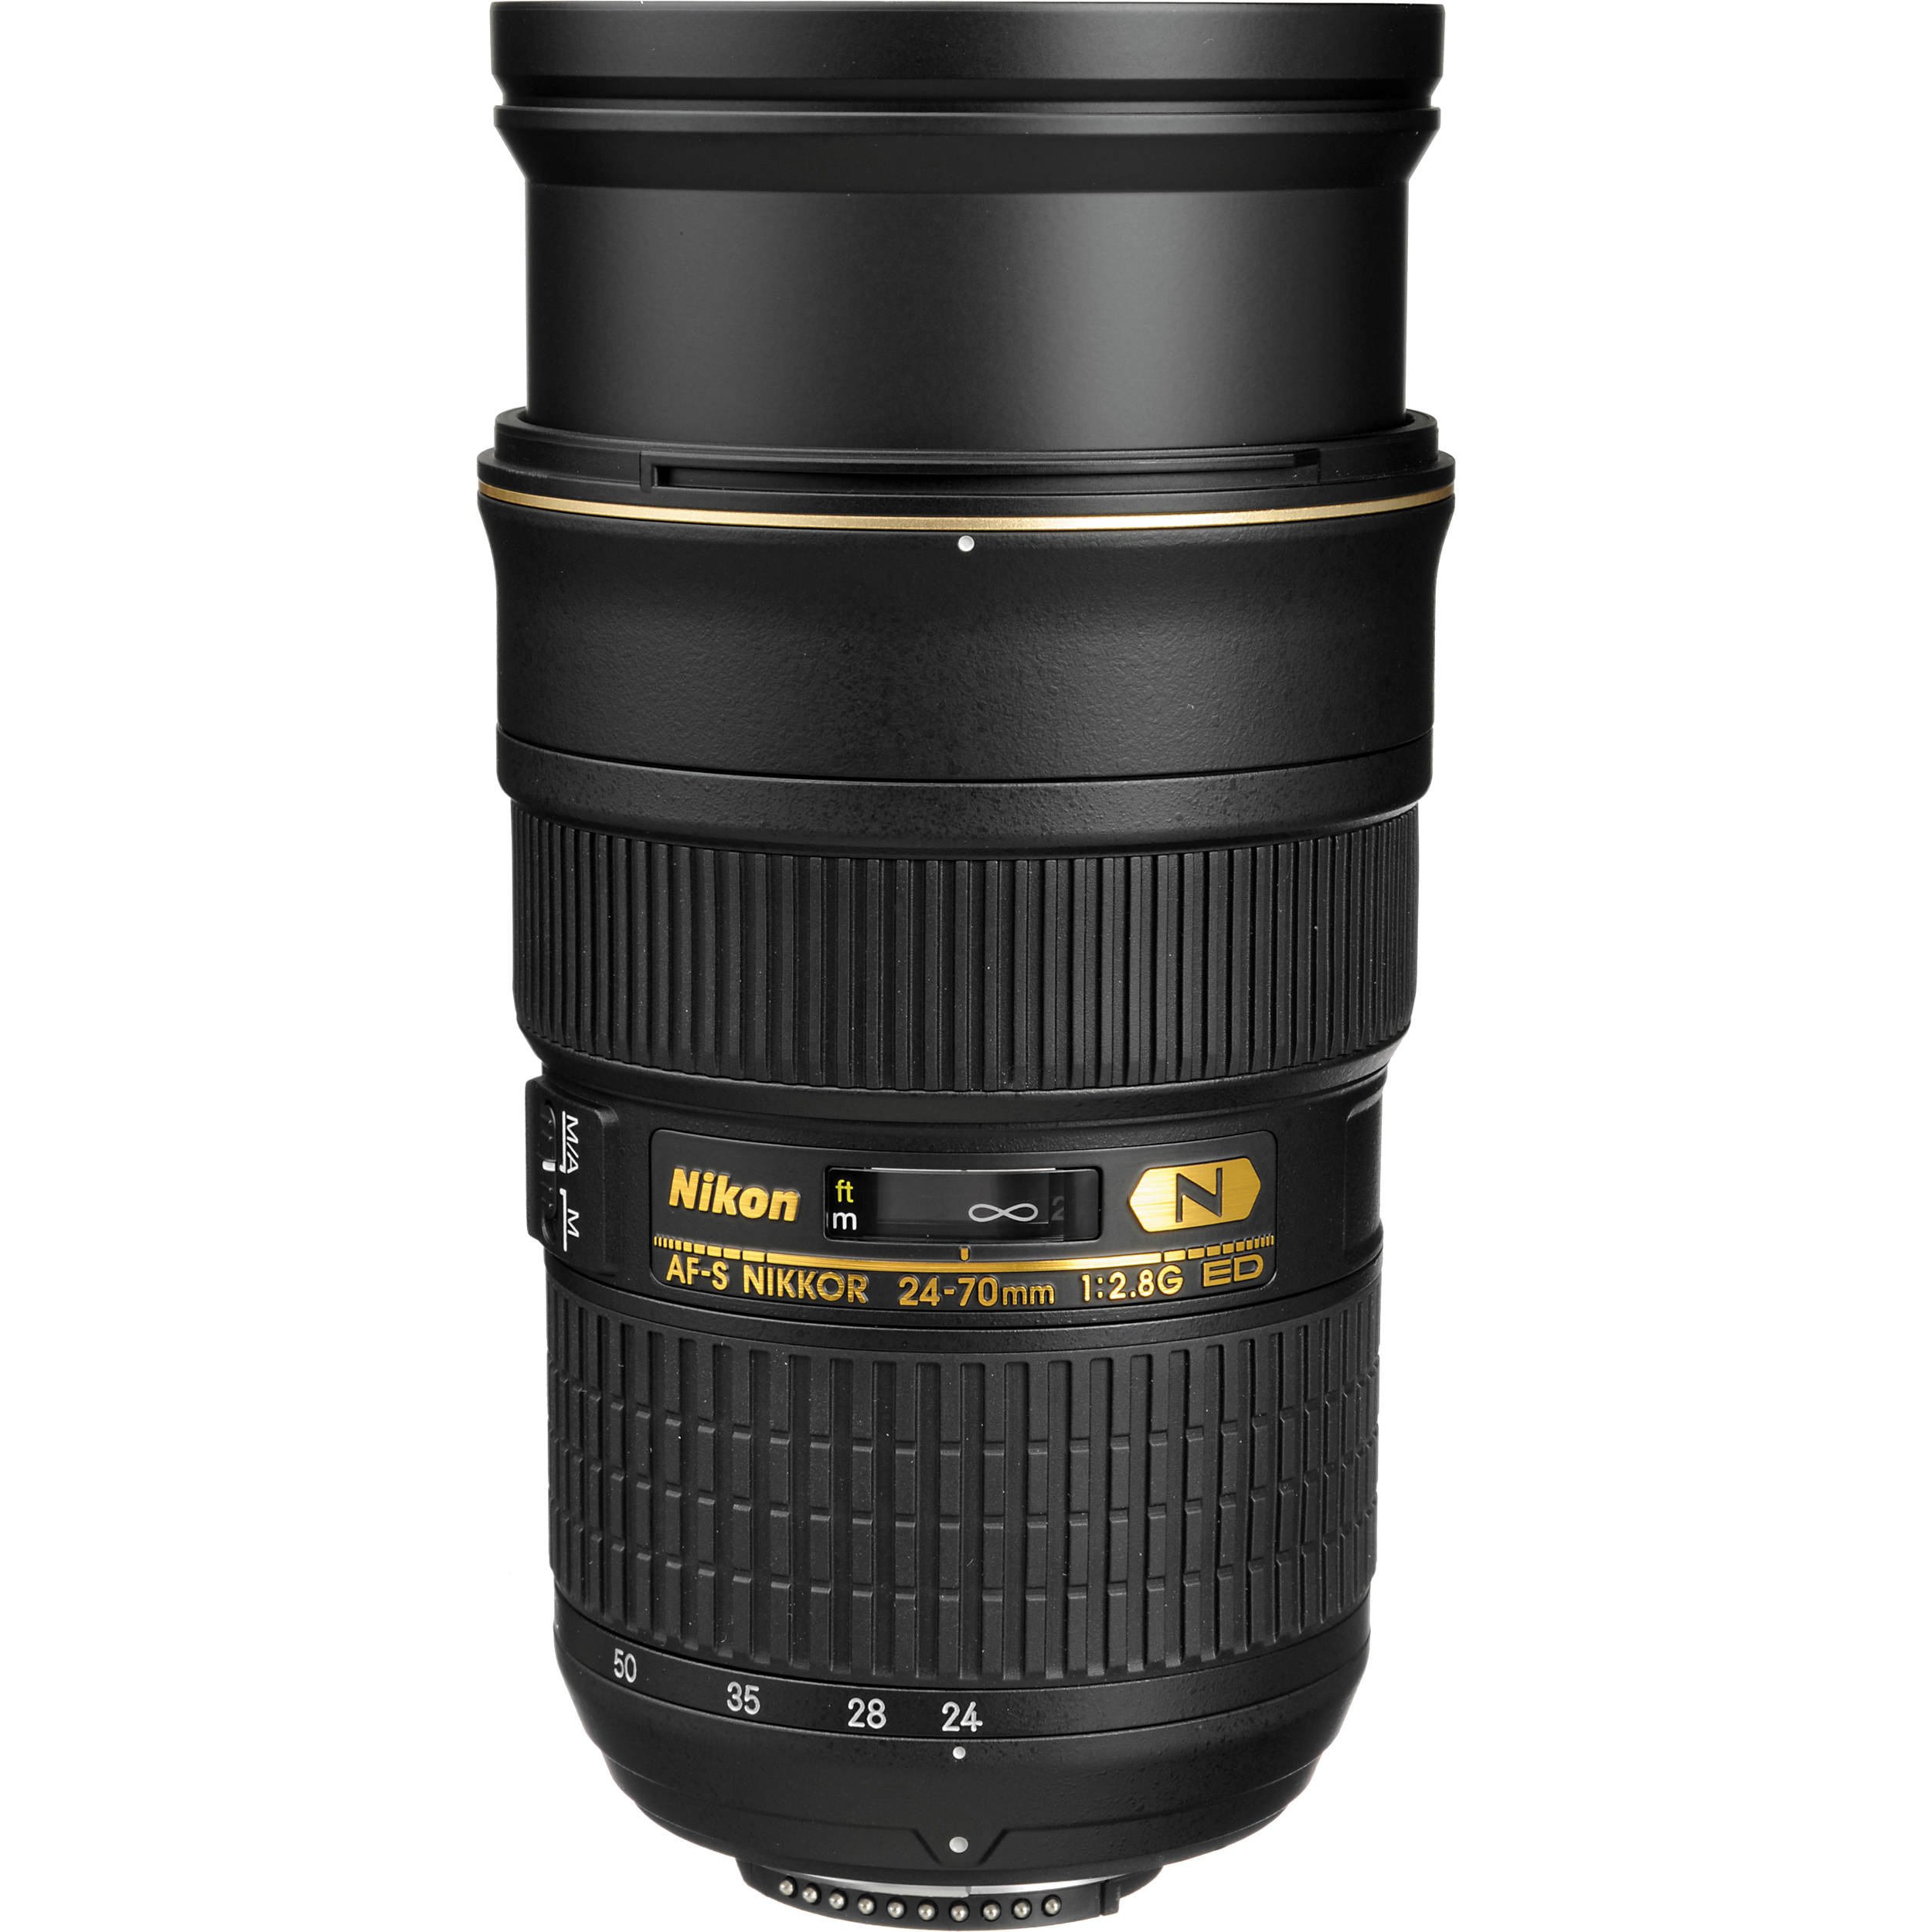 Nikon AF-S NIKKOR 24-70mm f/2.8G ED Lens 2164 018208021642